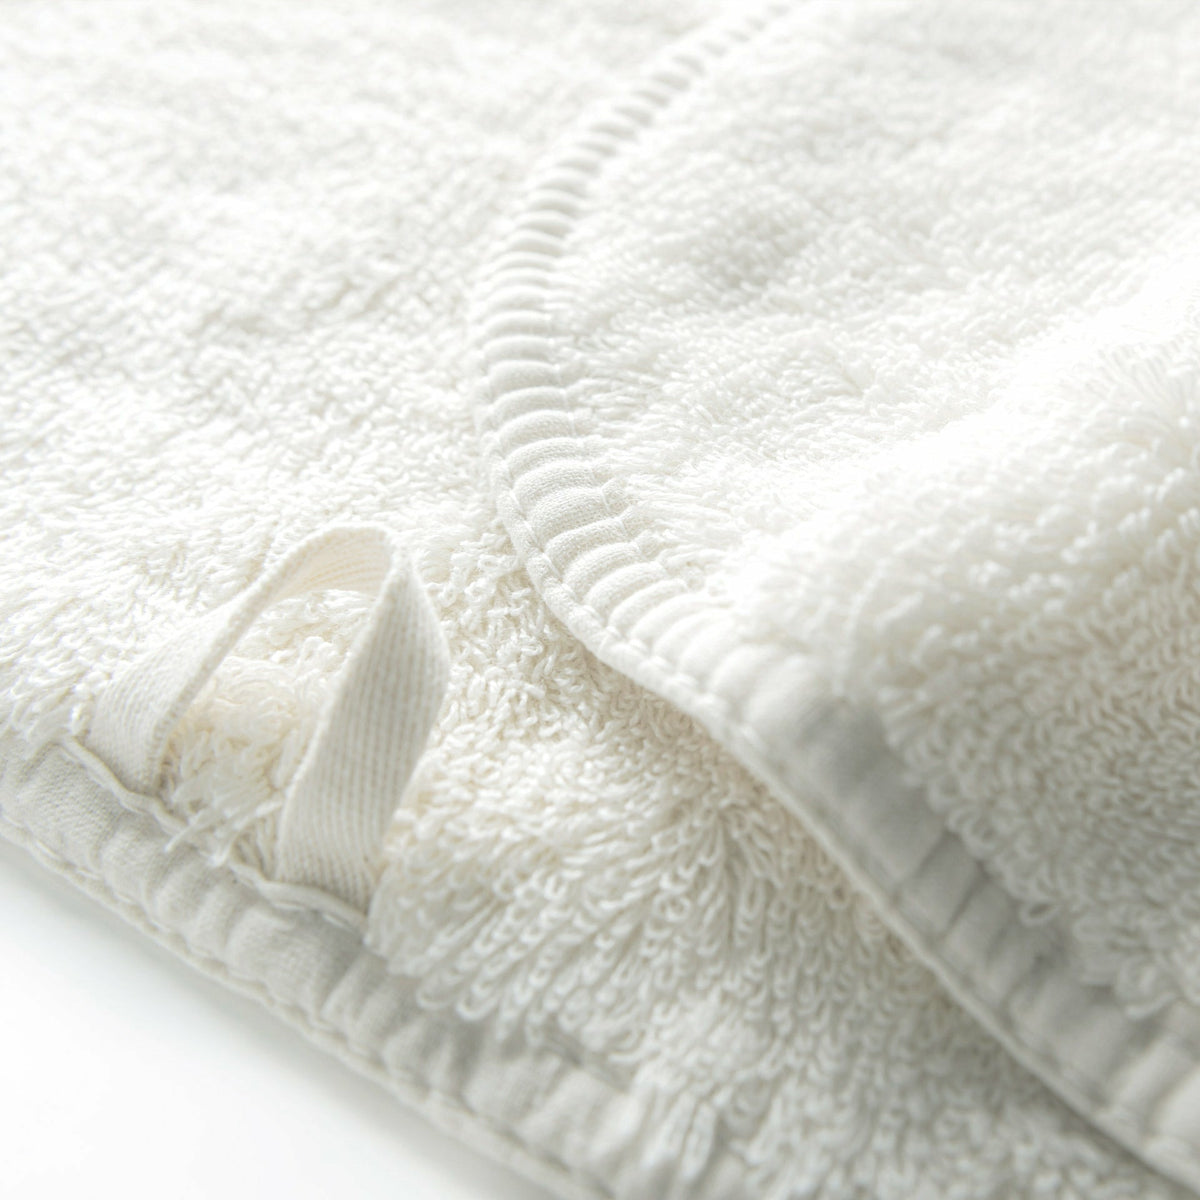 https://flandb.com/cdn/shop/products/Graccioza-Long-Double-Loop-Bath-Towels-Closeup-Snow_1200x.jpg?v=1660862695